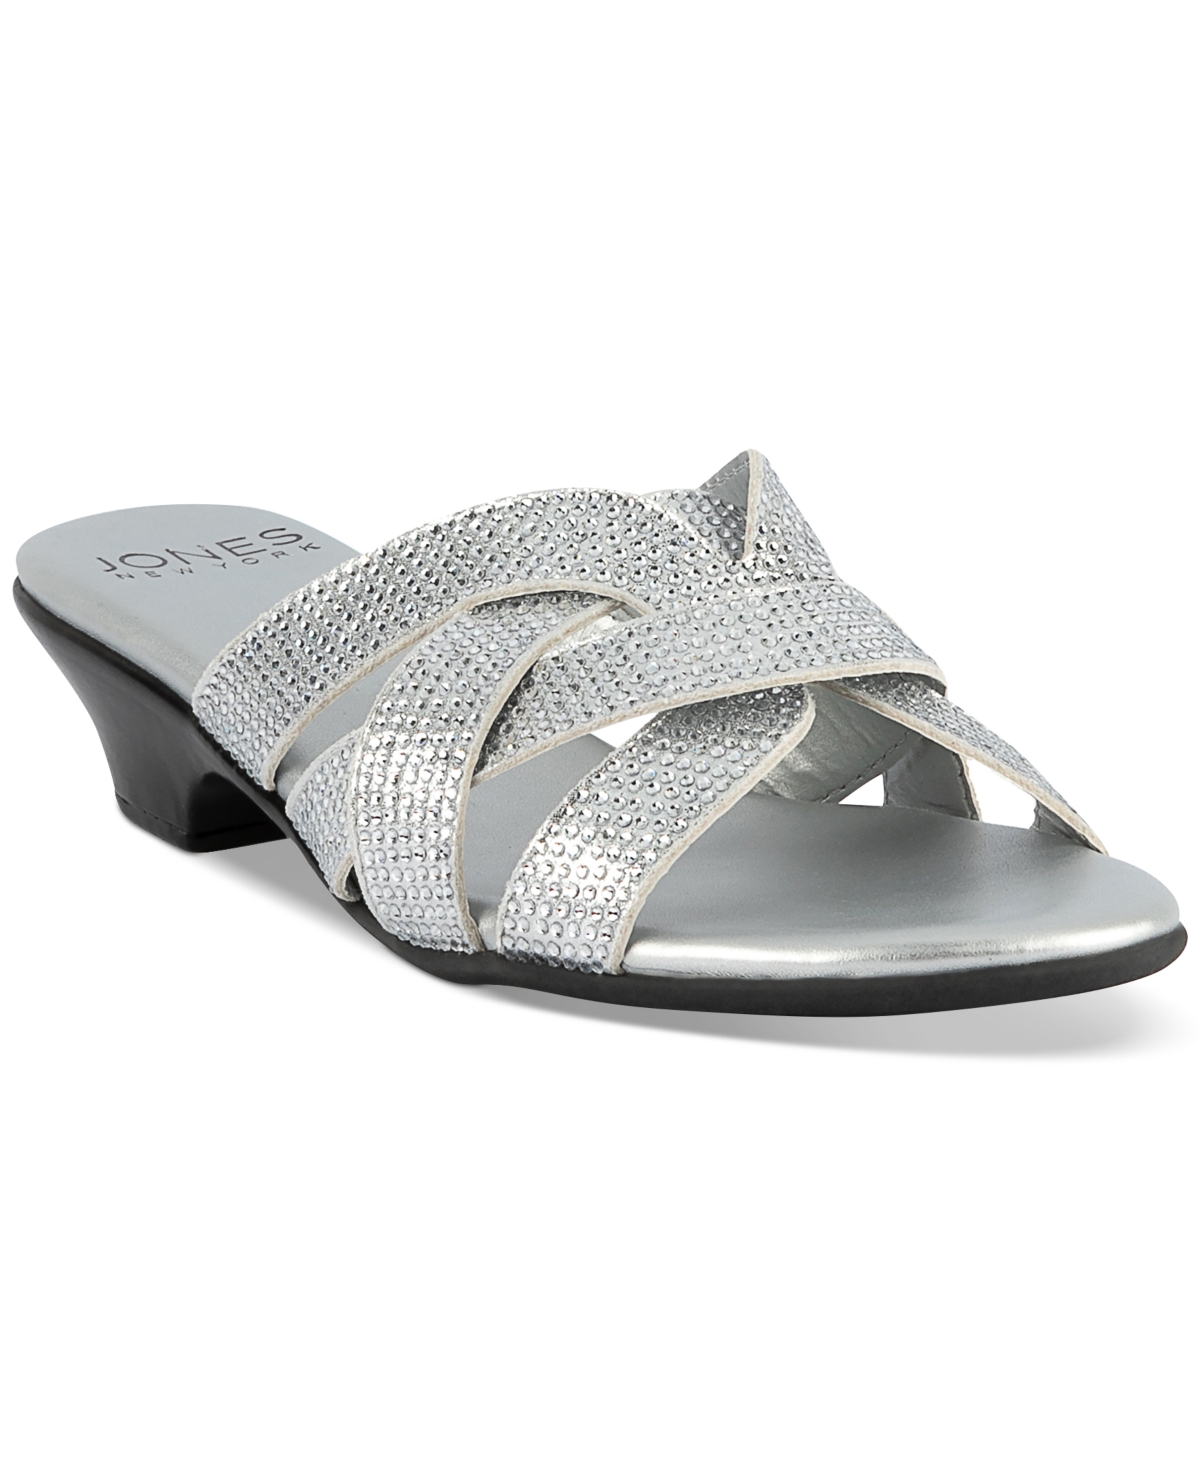 Enny Embellished Slide Sandals, Created for Macy's - Light Gold